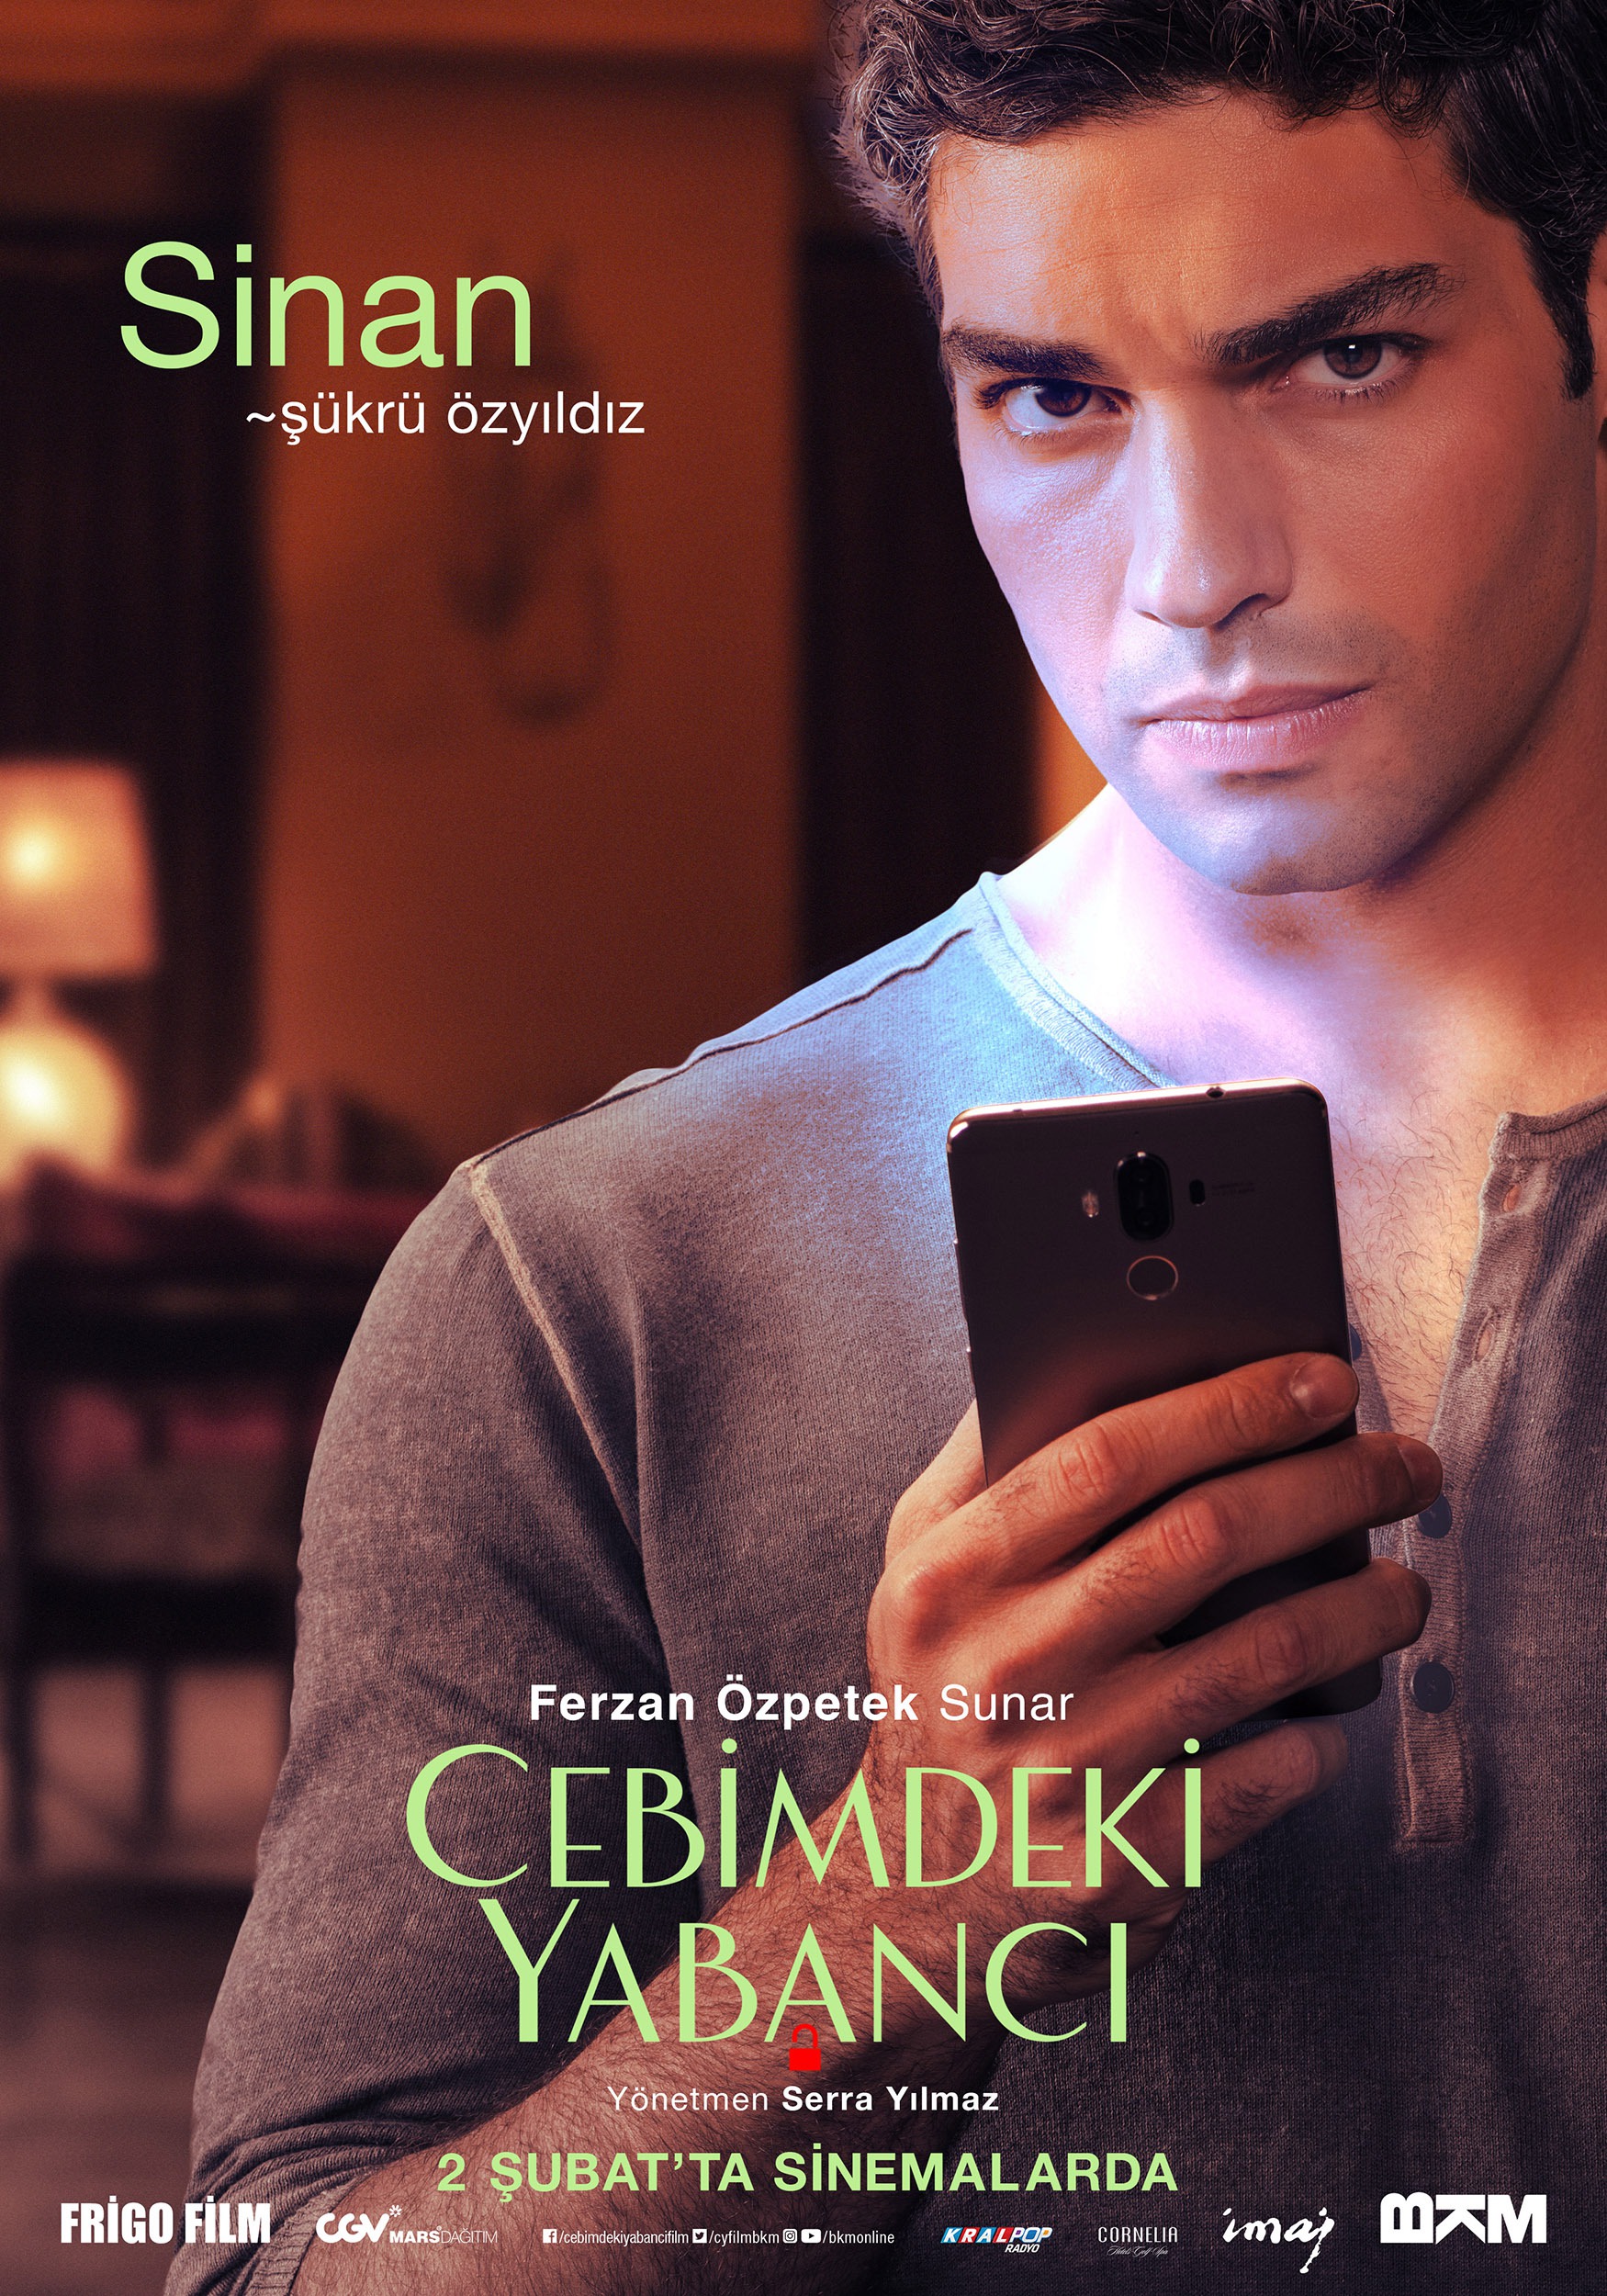 Mega Sized Movie Poster Image for Cebimdeki Yabancı (#8 of 10)